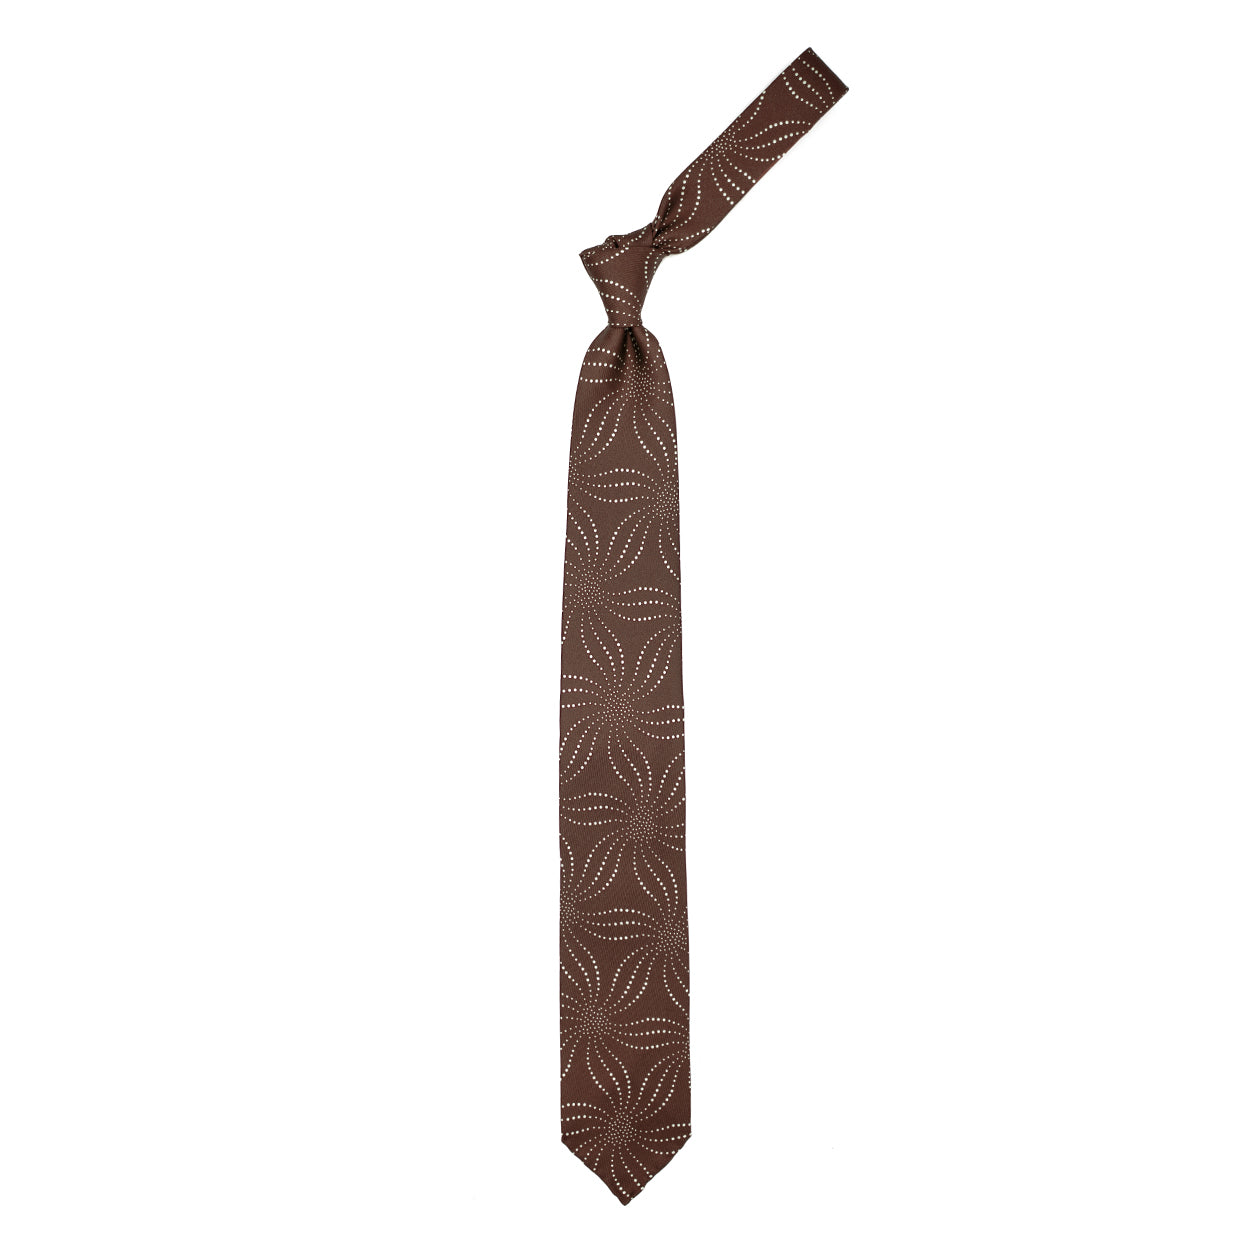 Cravatta marrone con disegno astratto beige